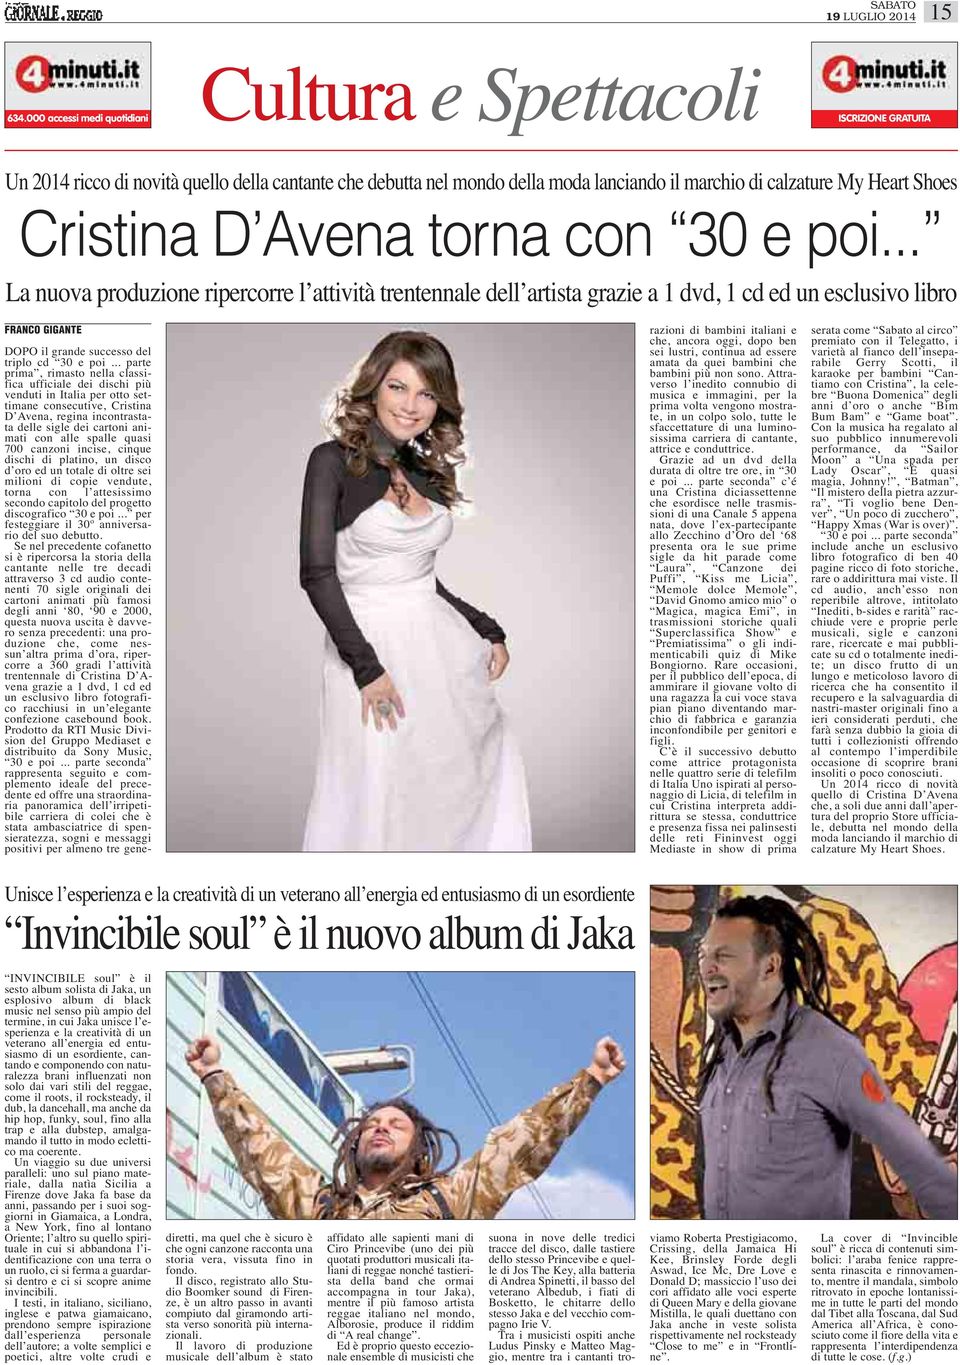 Cristina D Avena torna con 30 e poi.